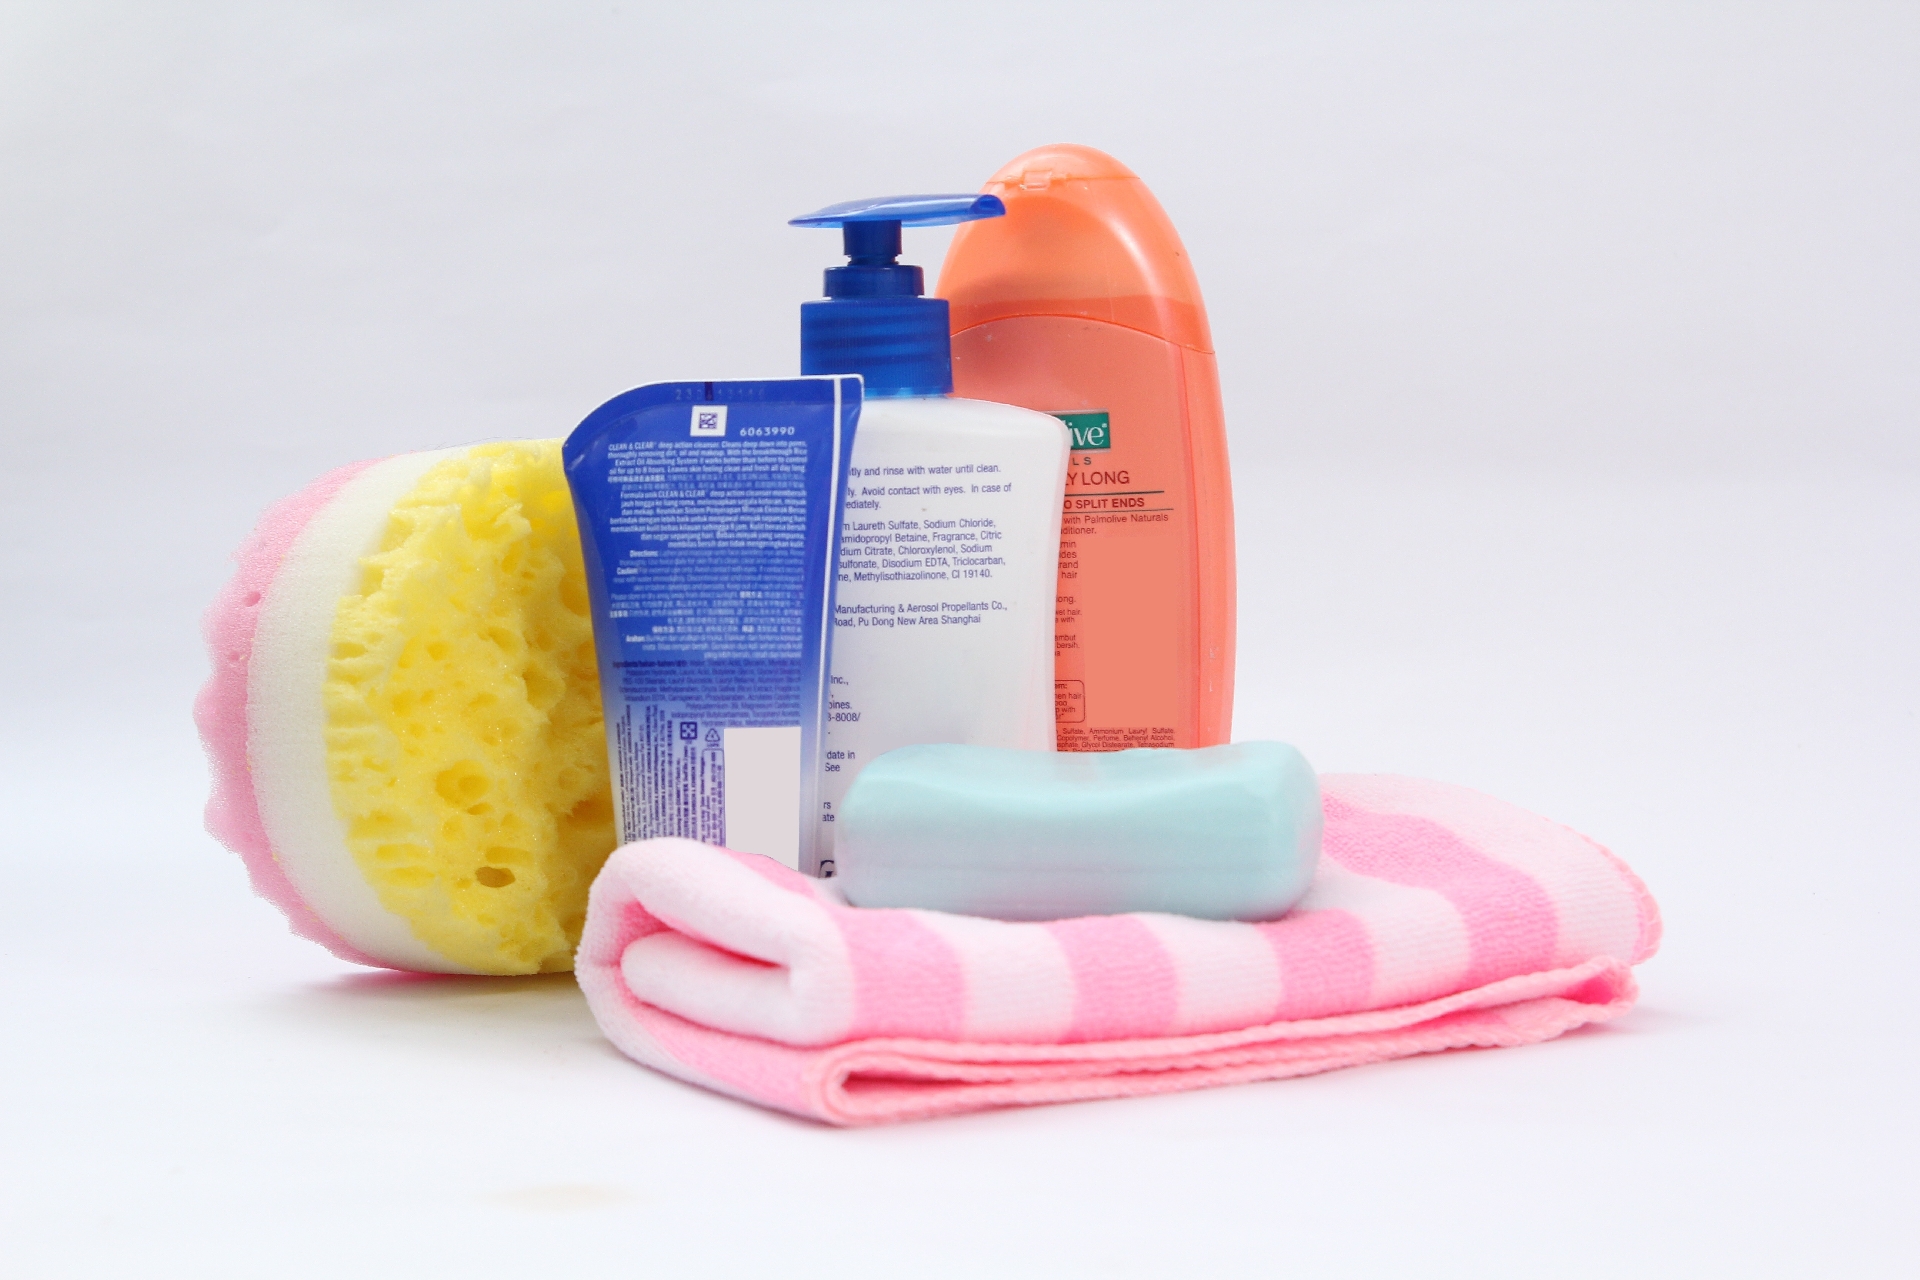 Шампунь полотенце. Принадлежности для гигиены. Гигиенические принадлежности для детей. Шампунь и мочалка. Набор для ванной мочалка.